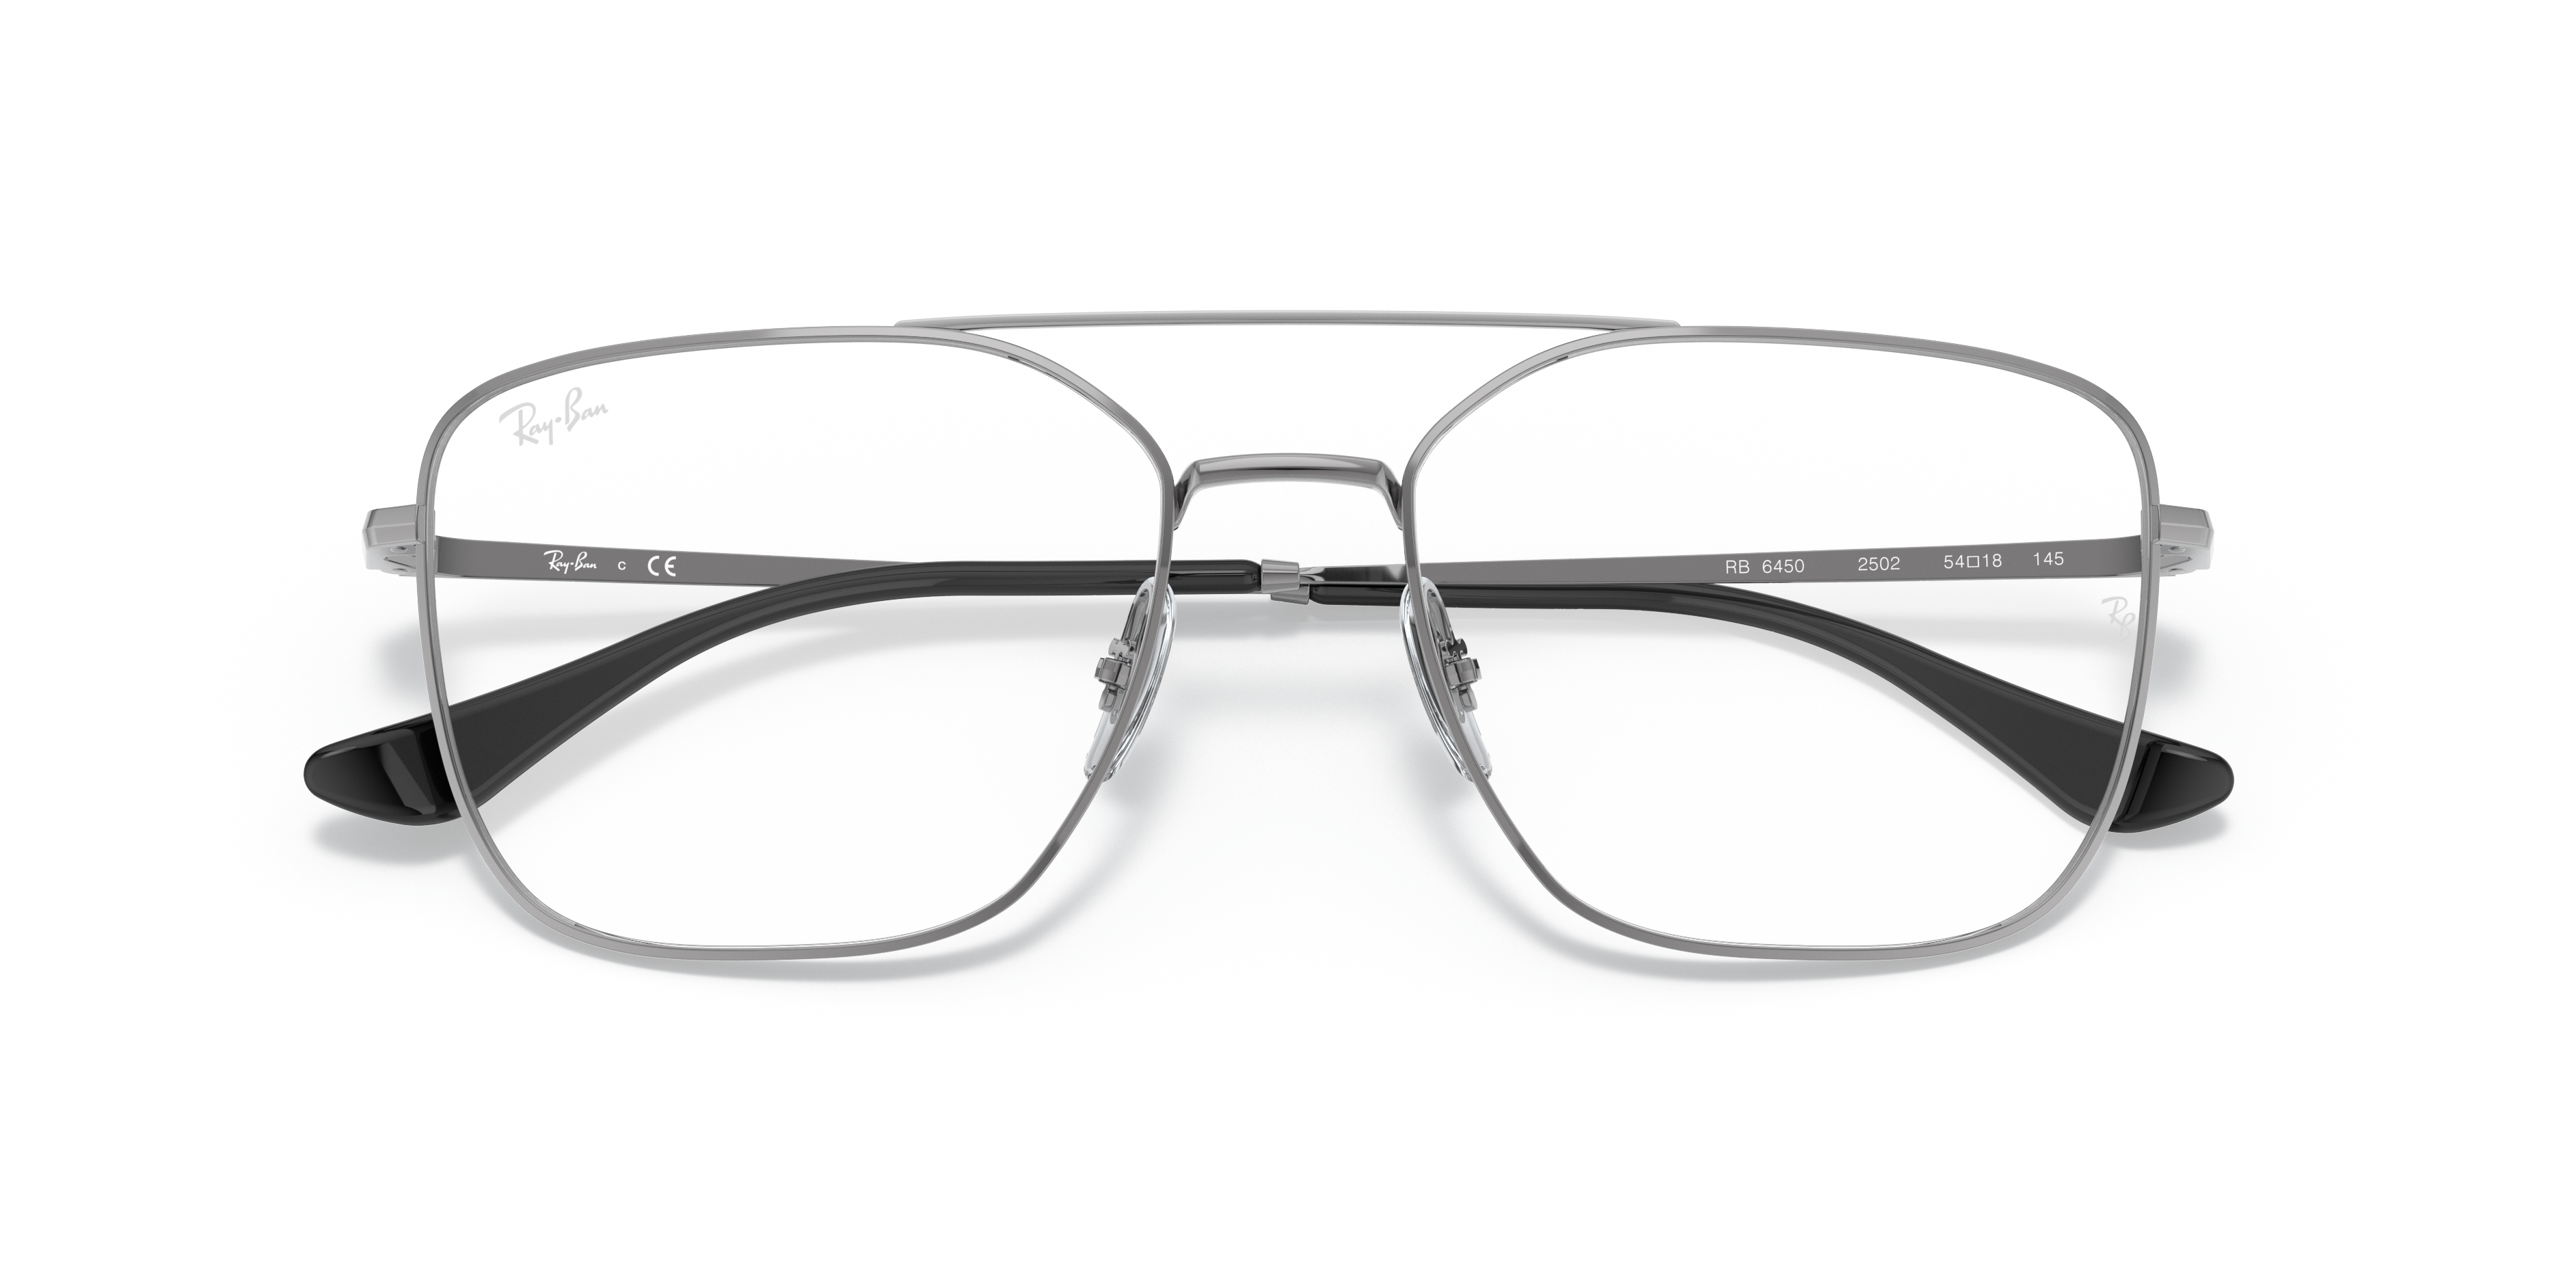 Rb6450 Optics Eyeglasses with Gunmetal Frame | Ray-Ban®